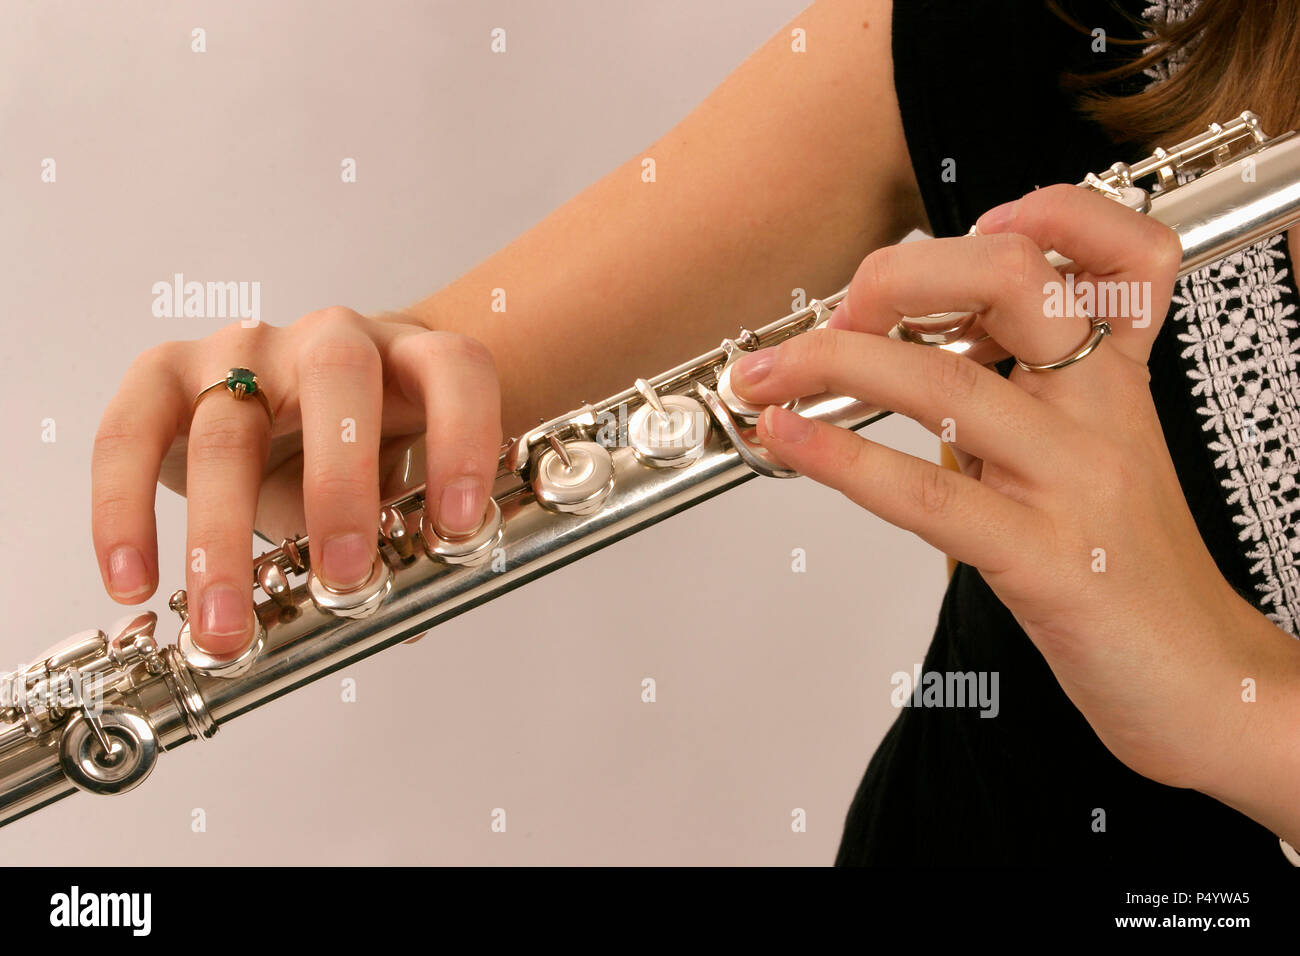 Flûte en position de jeu montrant les doigts sur les touches Photo Stock -  Alamy